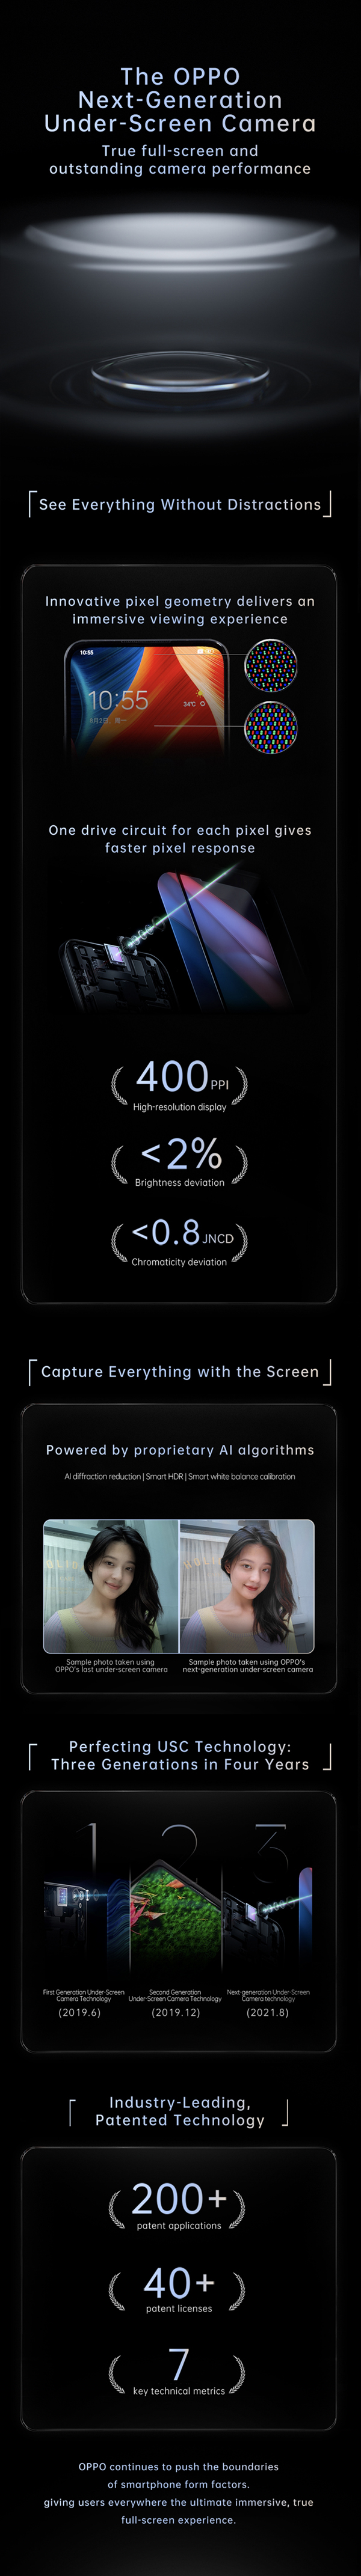 Oppo dévoile sa nouvelle technologie de caméra sous-écran